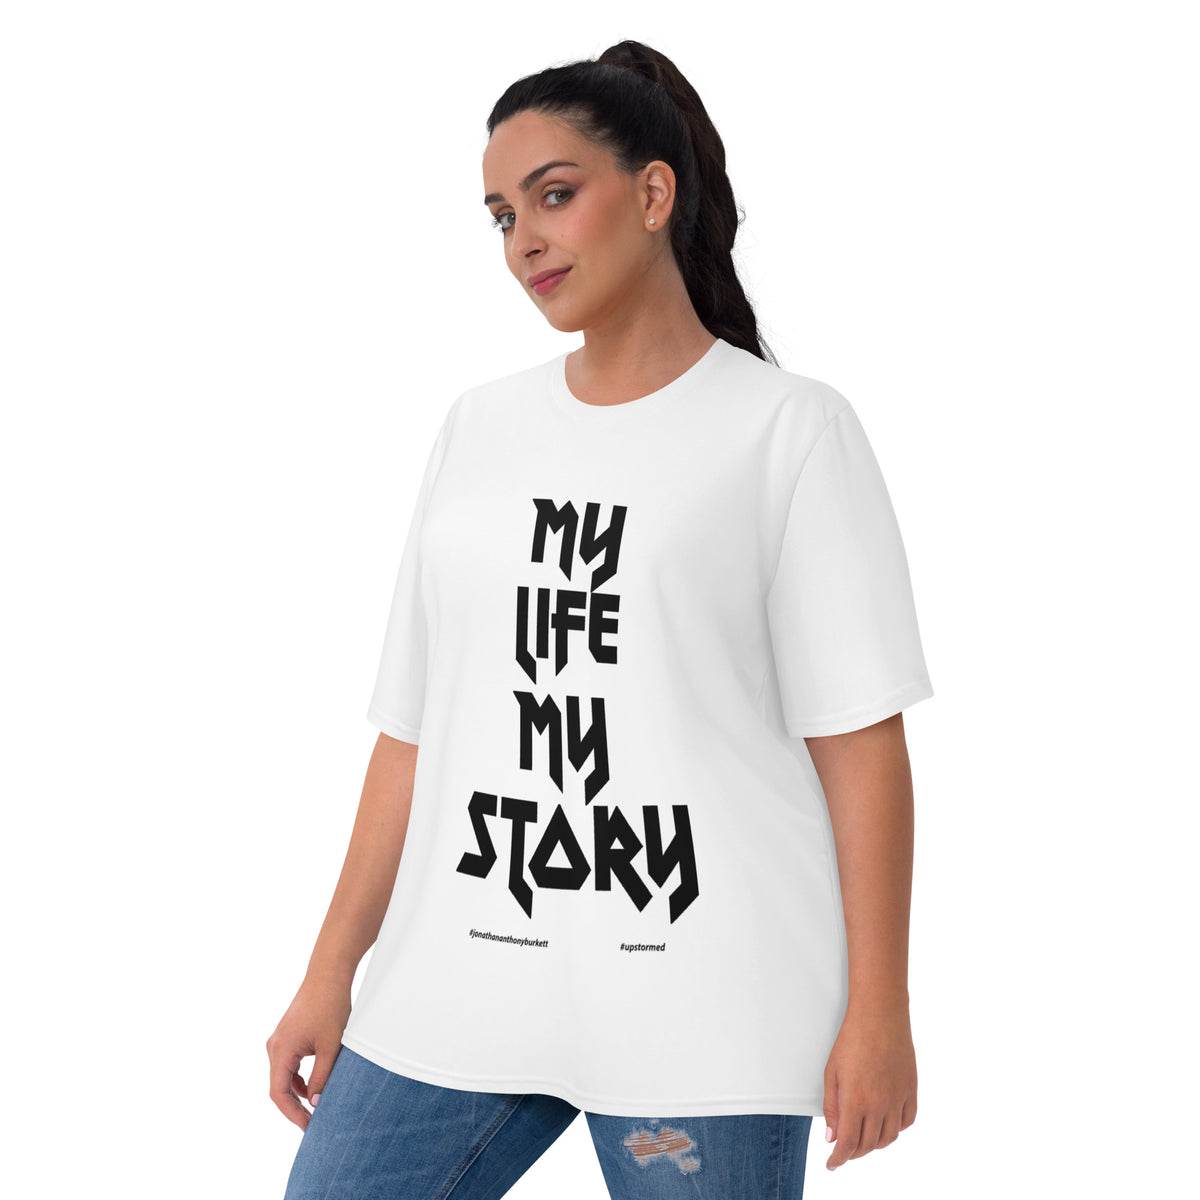 My Life, My Story Women's T-shirt